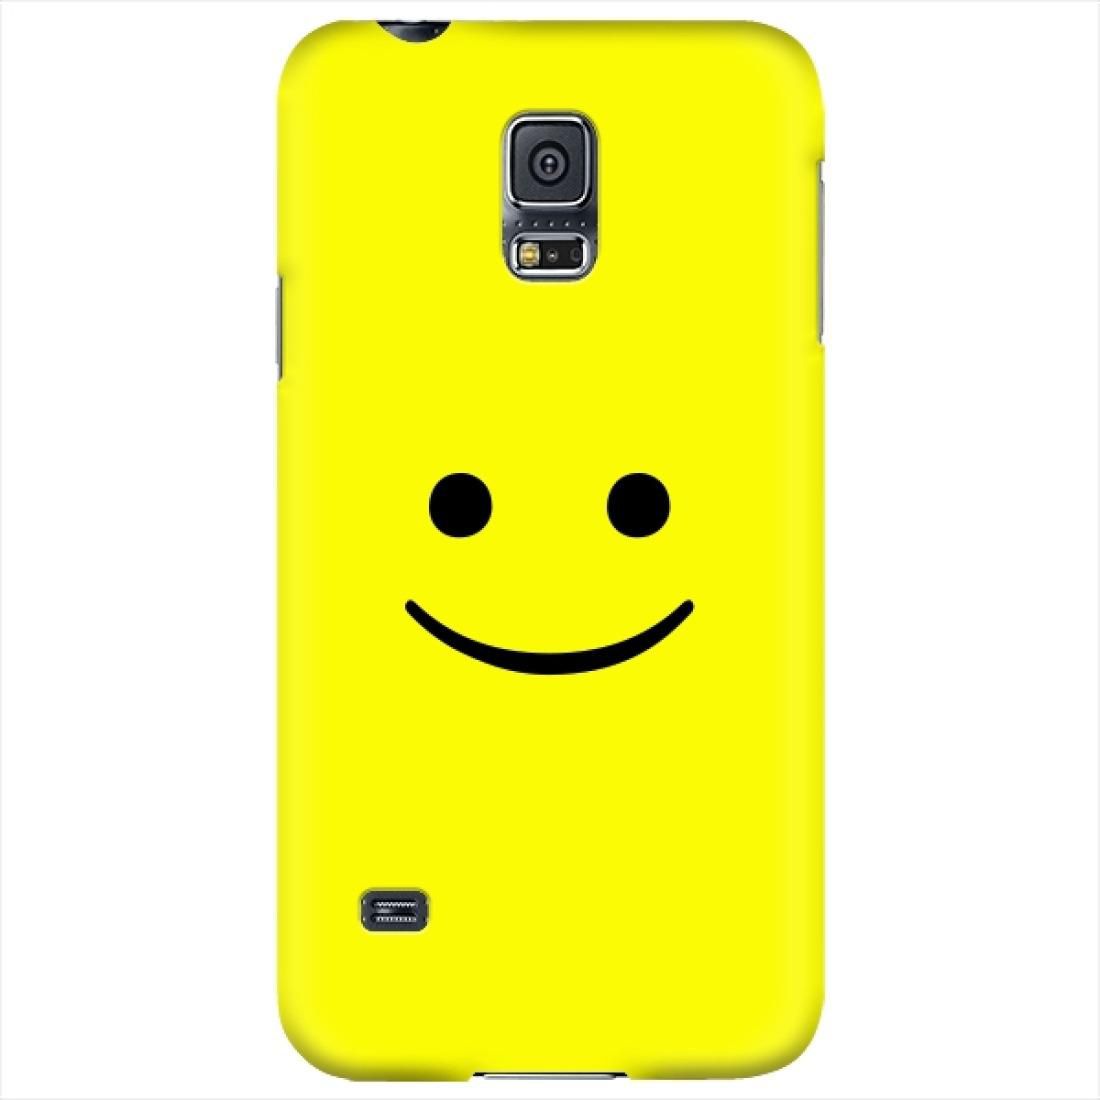 ستايليزد Stylizedd Samsung Galaxy S5 Premium Slim Snap case cover Matte Finish - Blimey Smiley